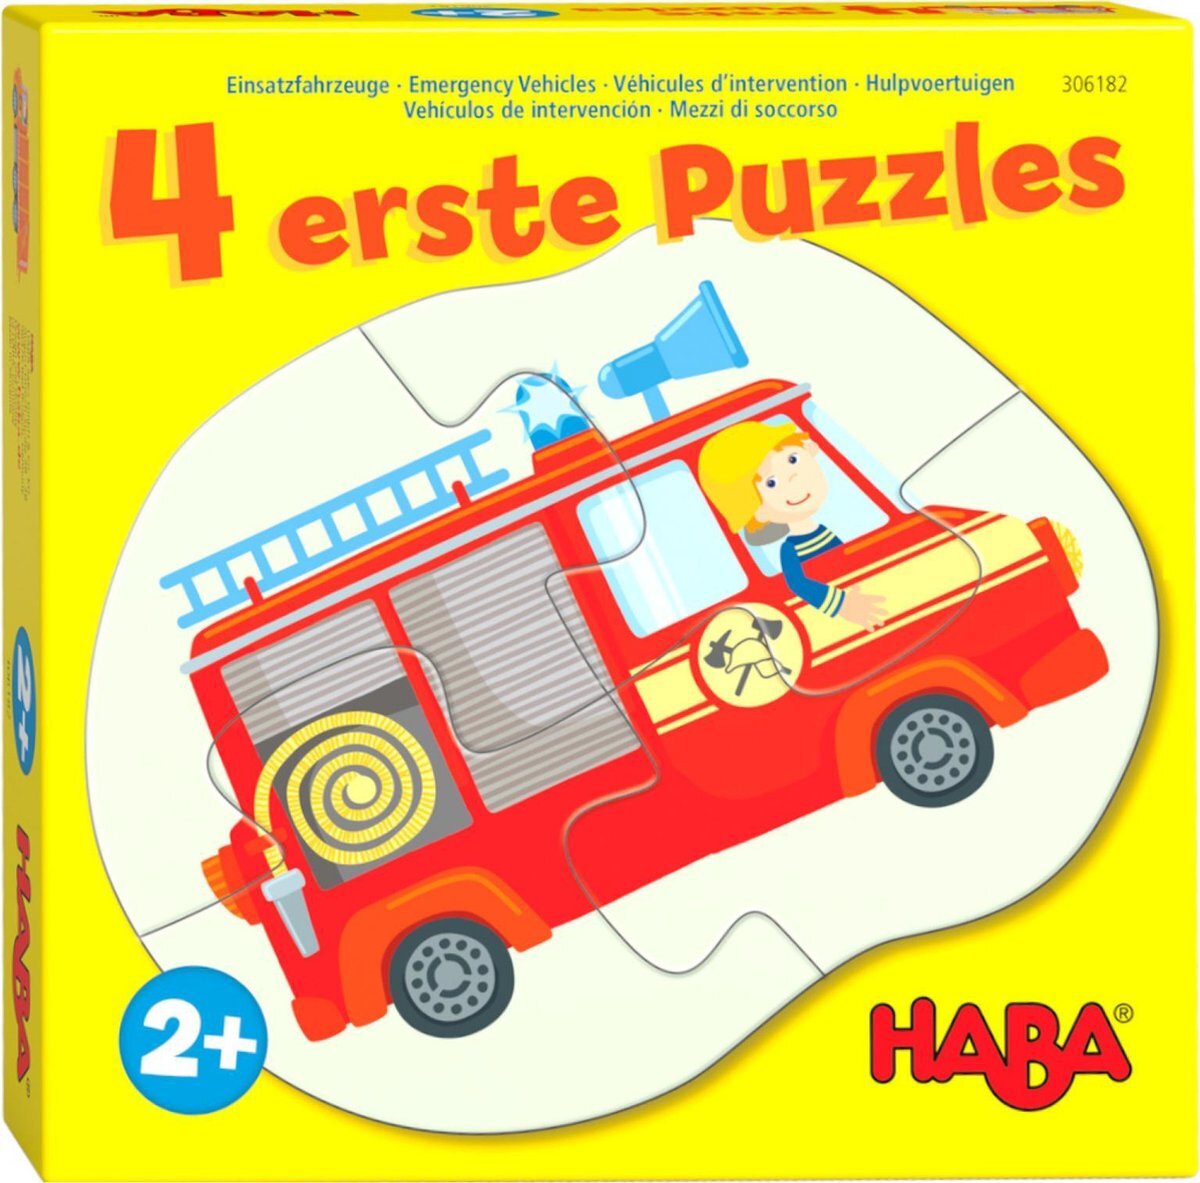 Haba 4 eerste puzzels - Hulpvoertuigen